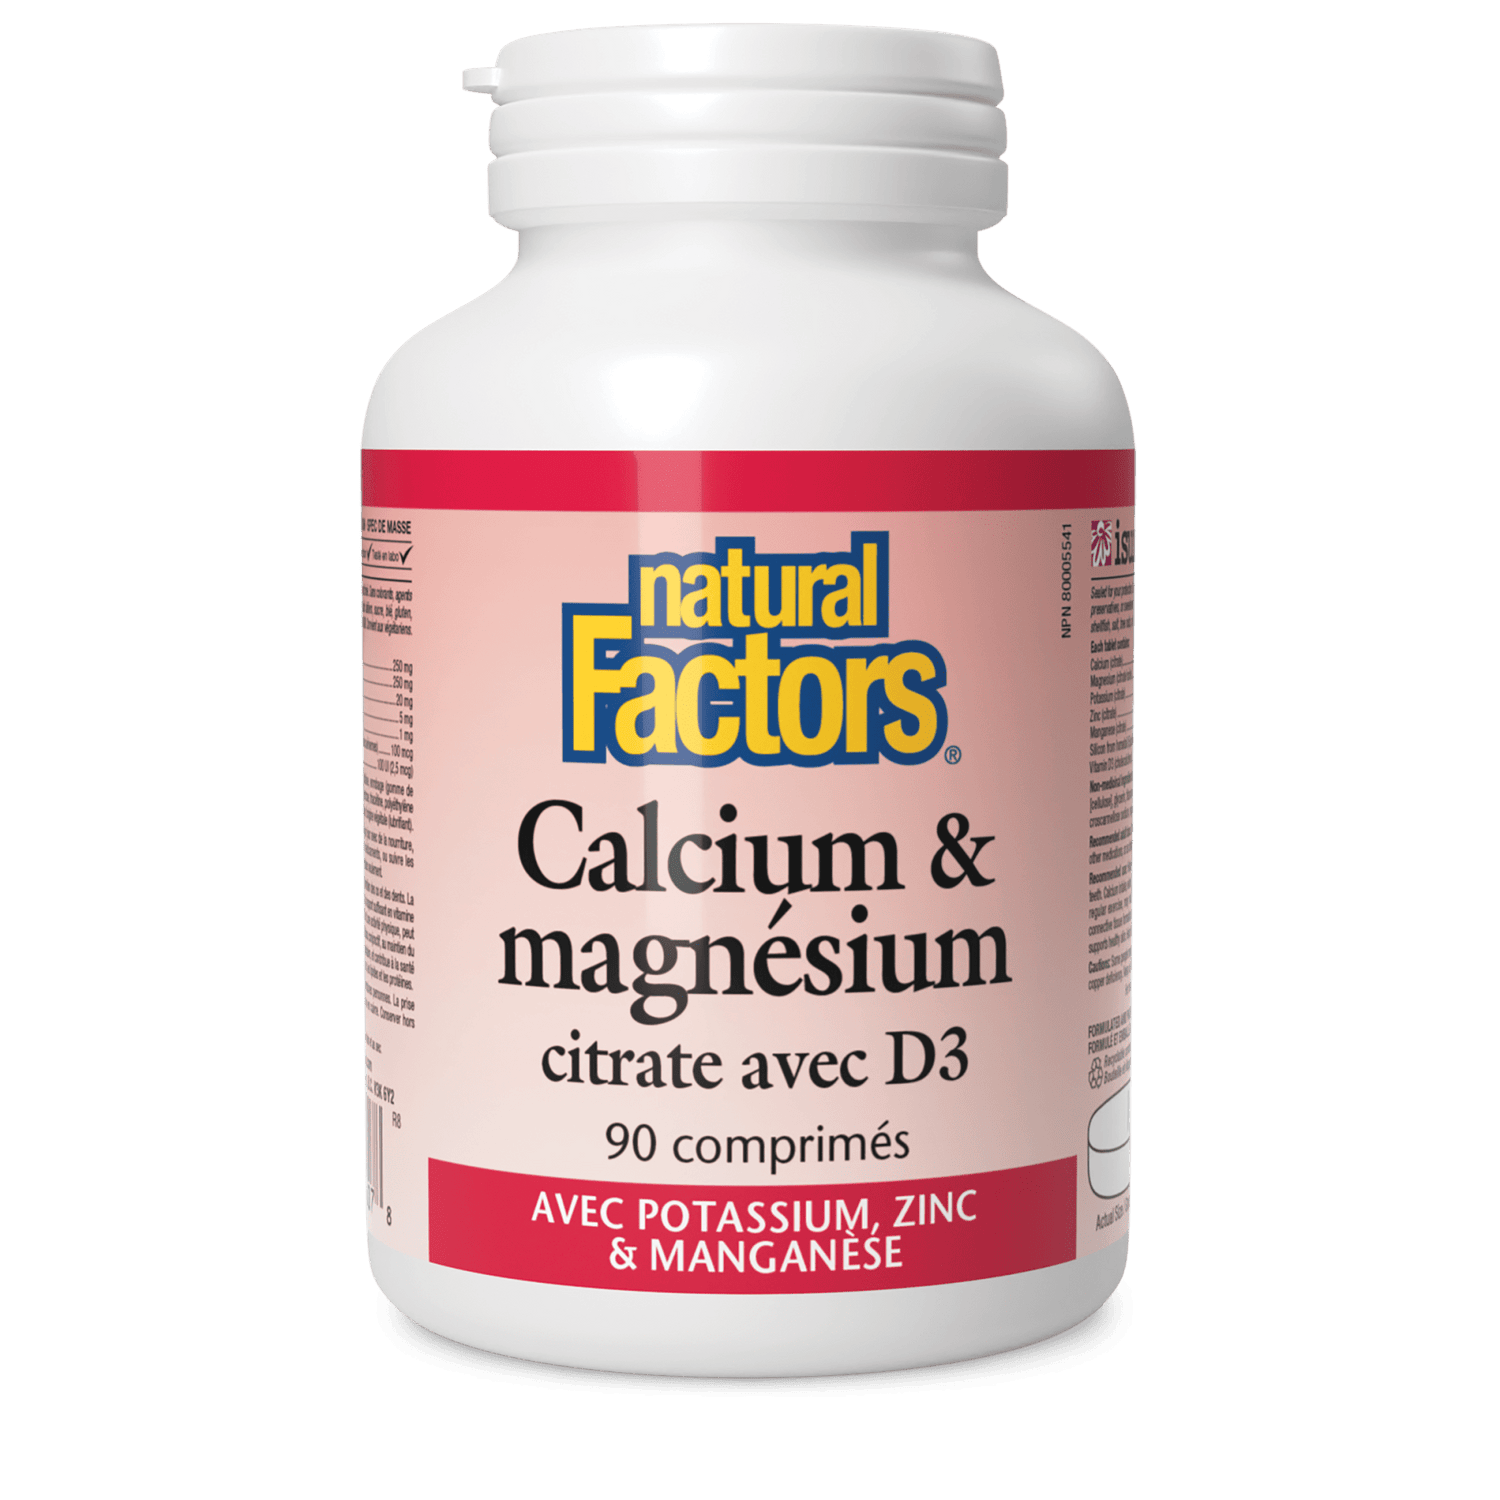 Calcium & magnésium citrate avec D3 avec potassium, zinc & manganèse, Natural Factors|v|image|1607